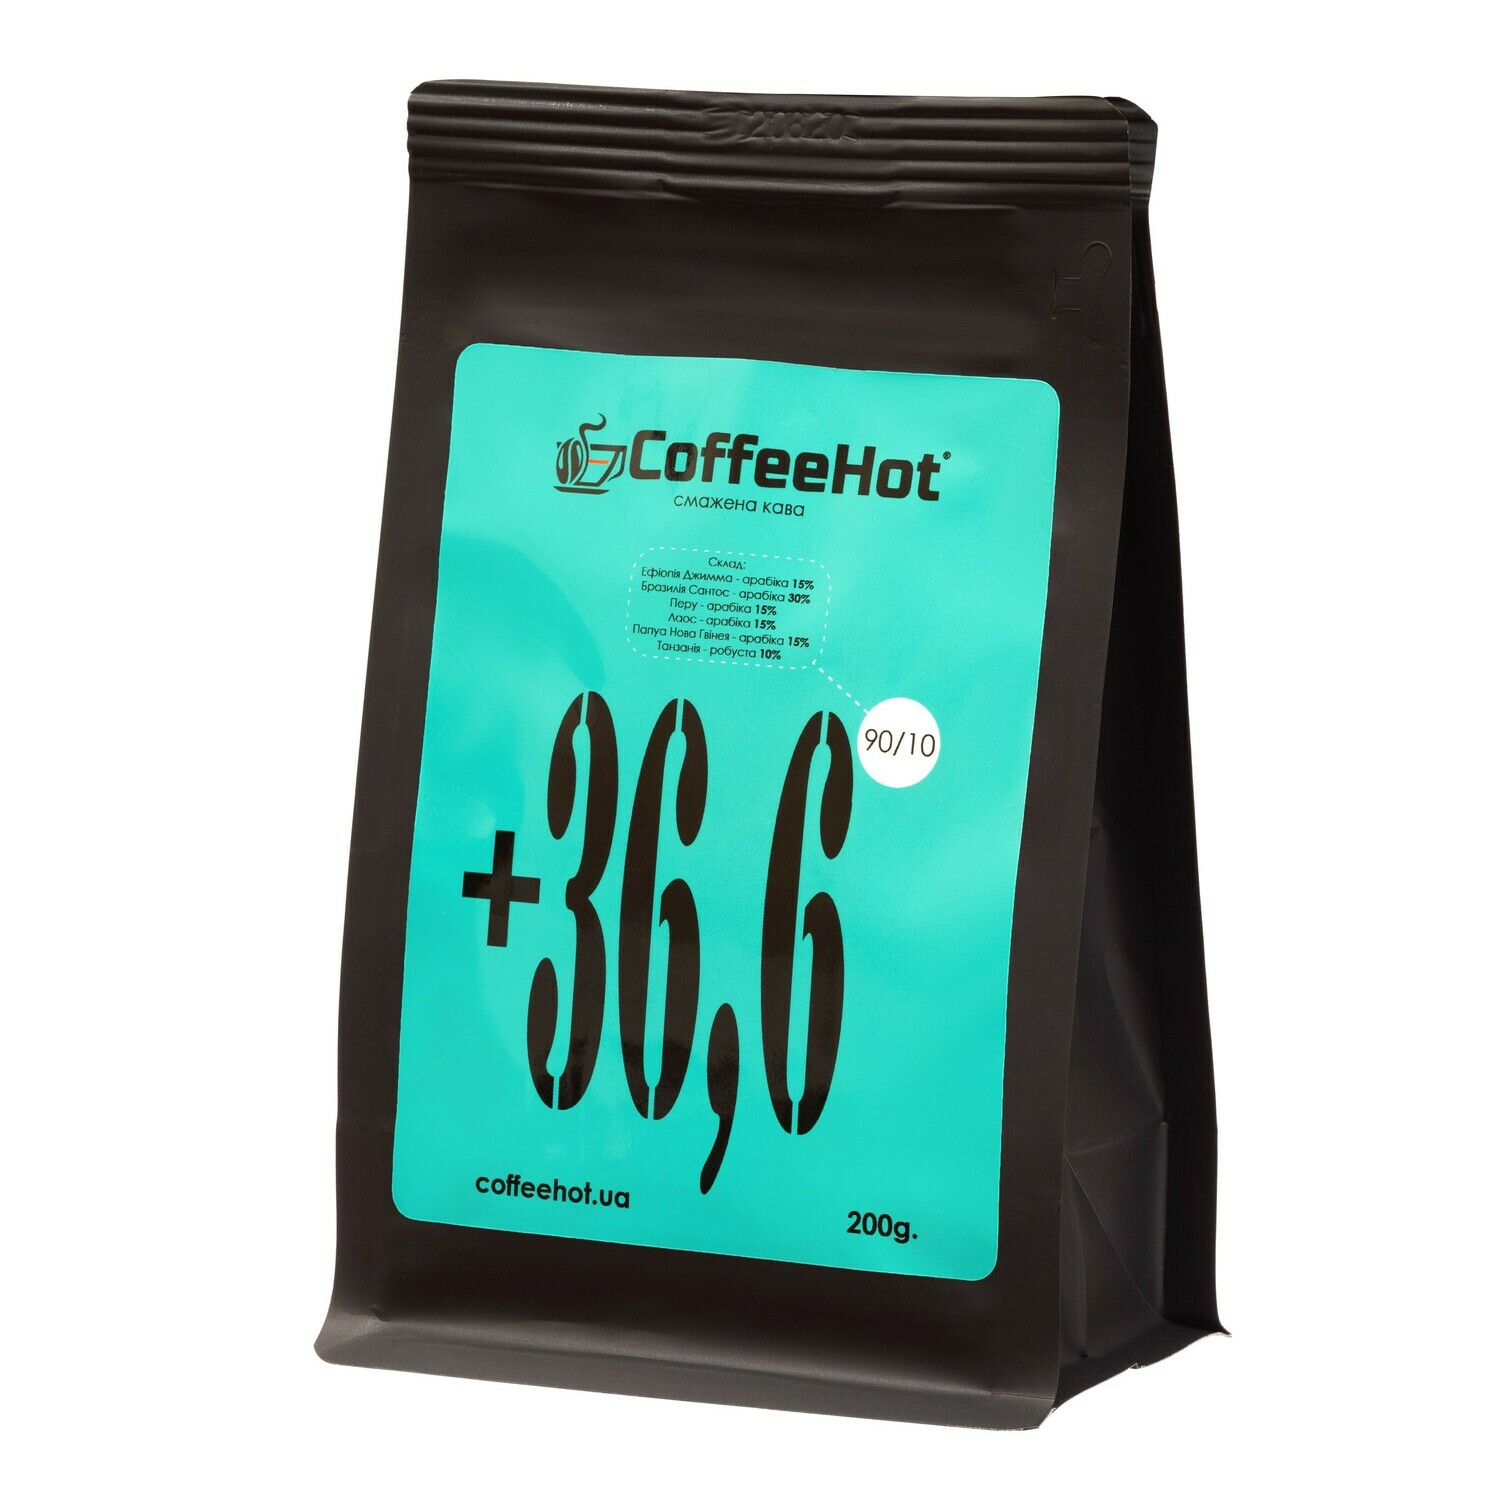 Кава в зернах +36,6 CoffeeHot™